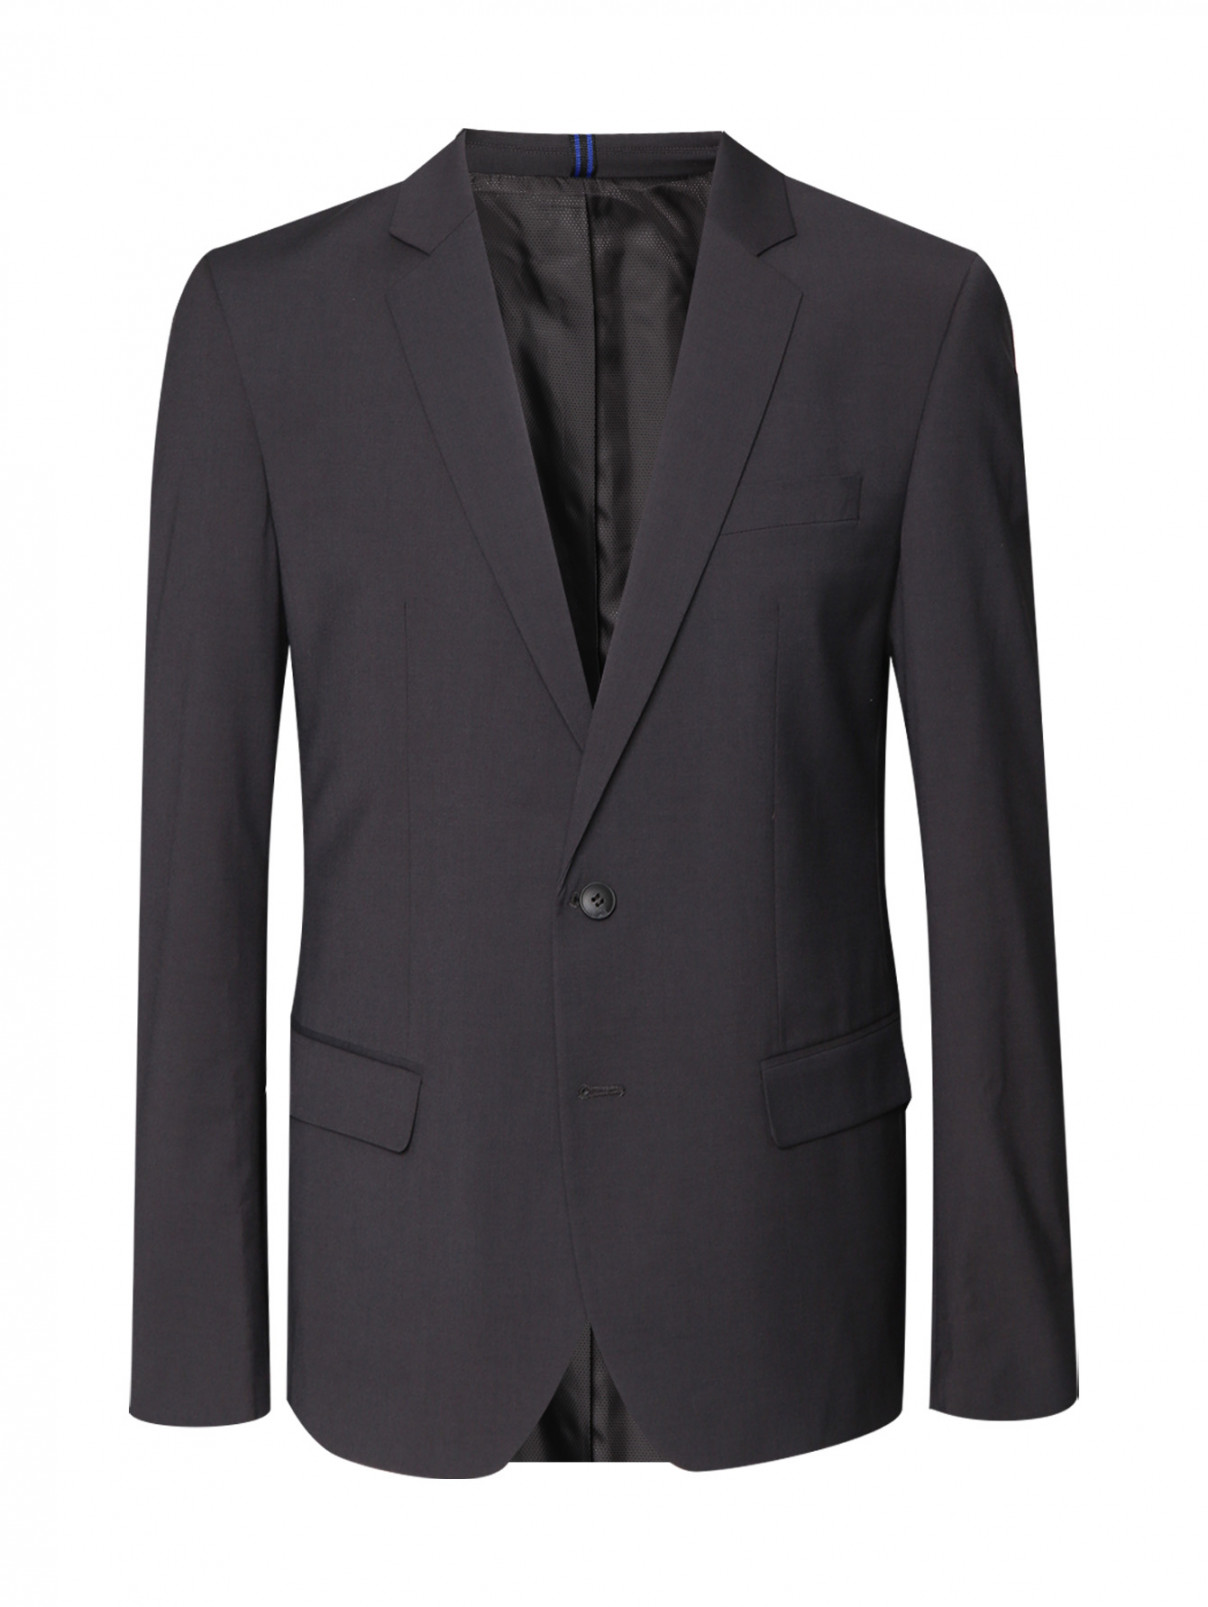 Однотонный пиджак на пуговицах Antony Morato  –  Общий вид  – Цвет:  Серый